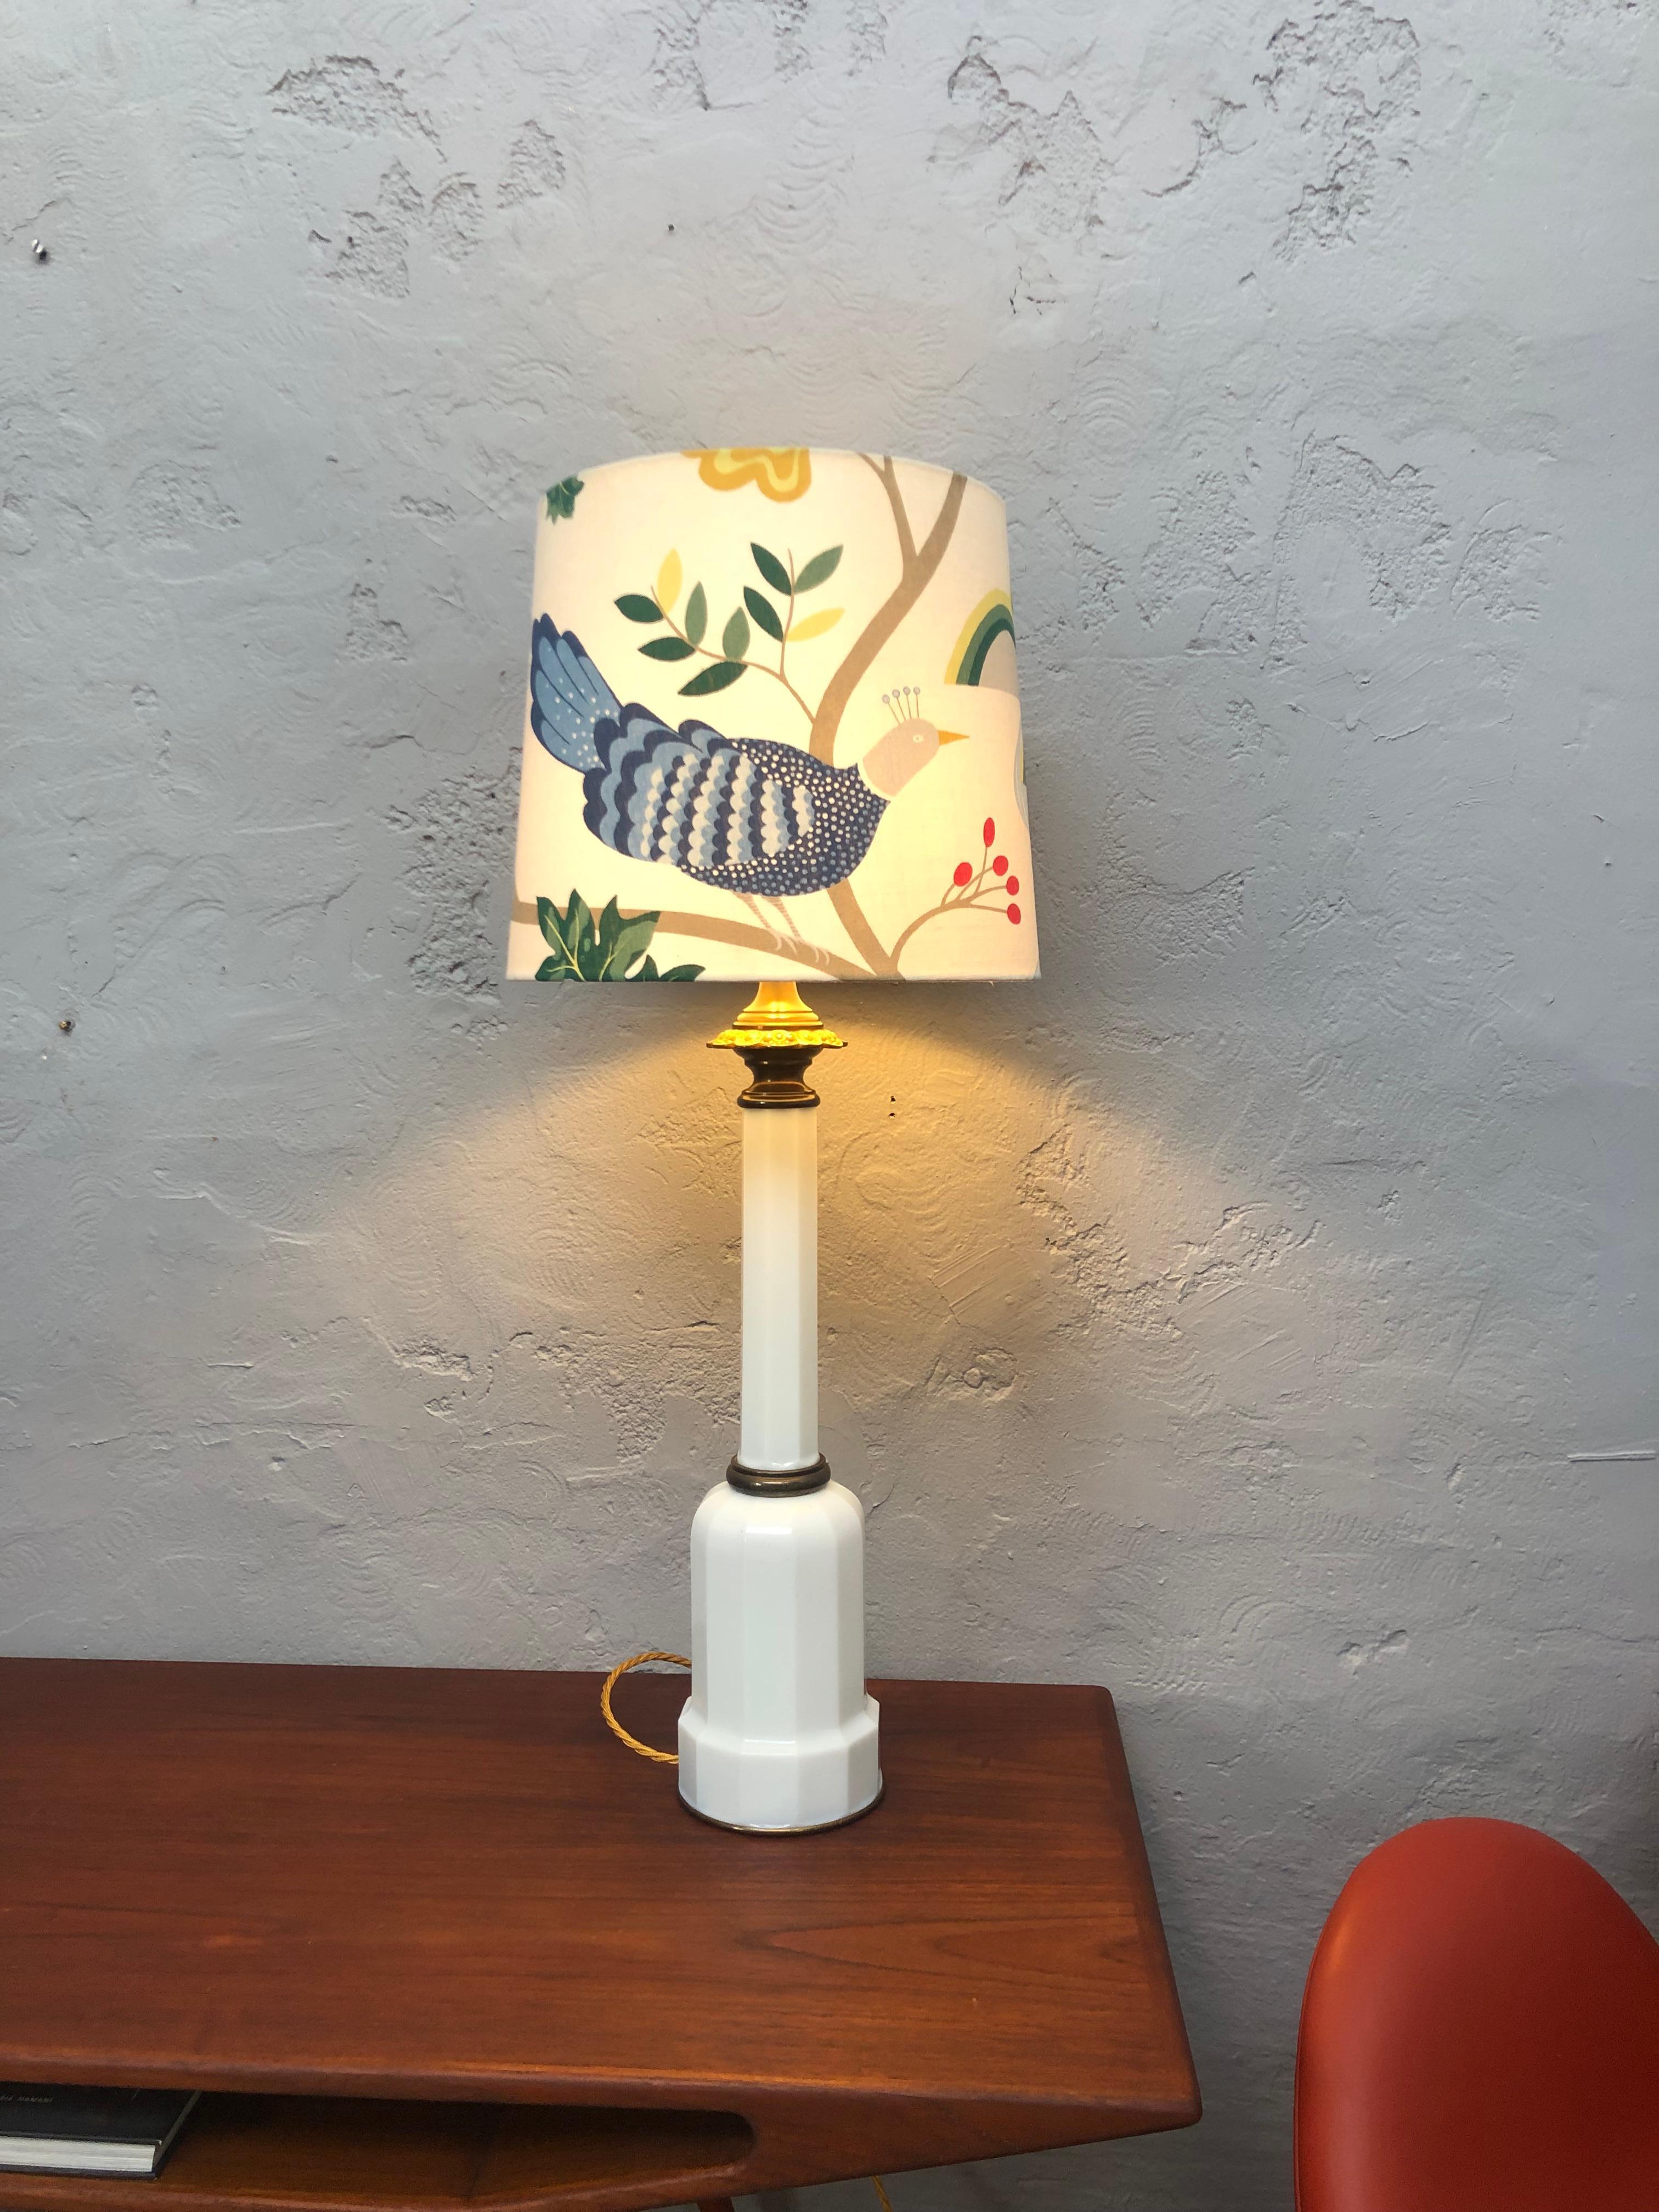 Grande et impressionnante lampe de table antique Heiberg des années 1920 en verre opalin blanc et avec des accessoires en laiton. 
Porte-lampe en laiton et céramique avec un interrupteur à tirette à chaîne. 
Support d'abat-jour en laiton.
Recâblage